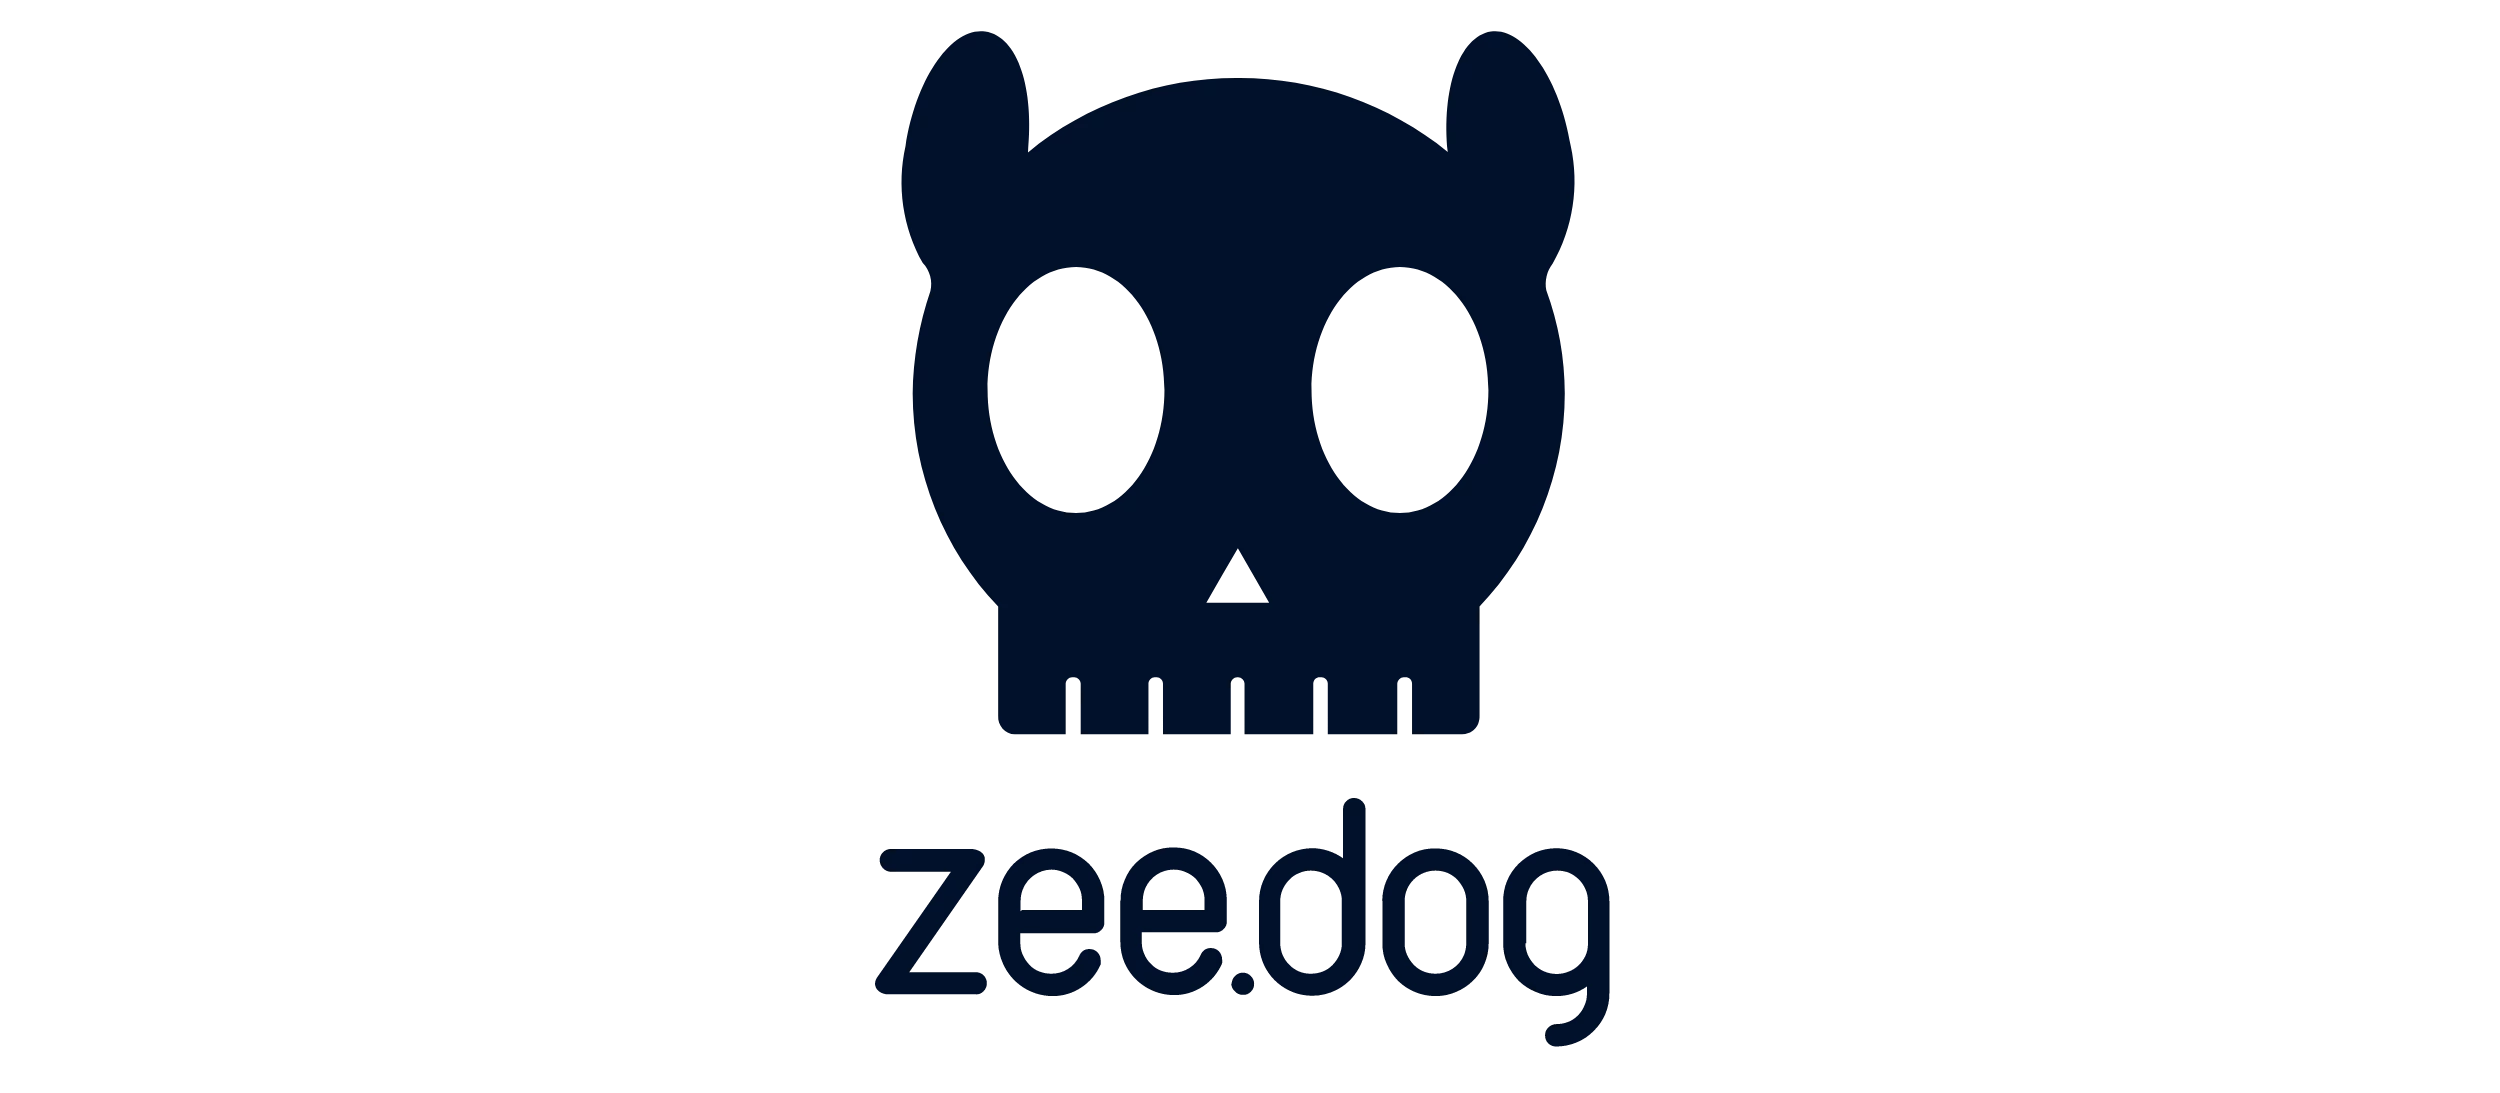 Zeedog logo